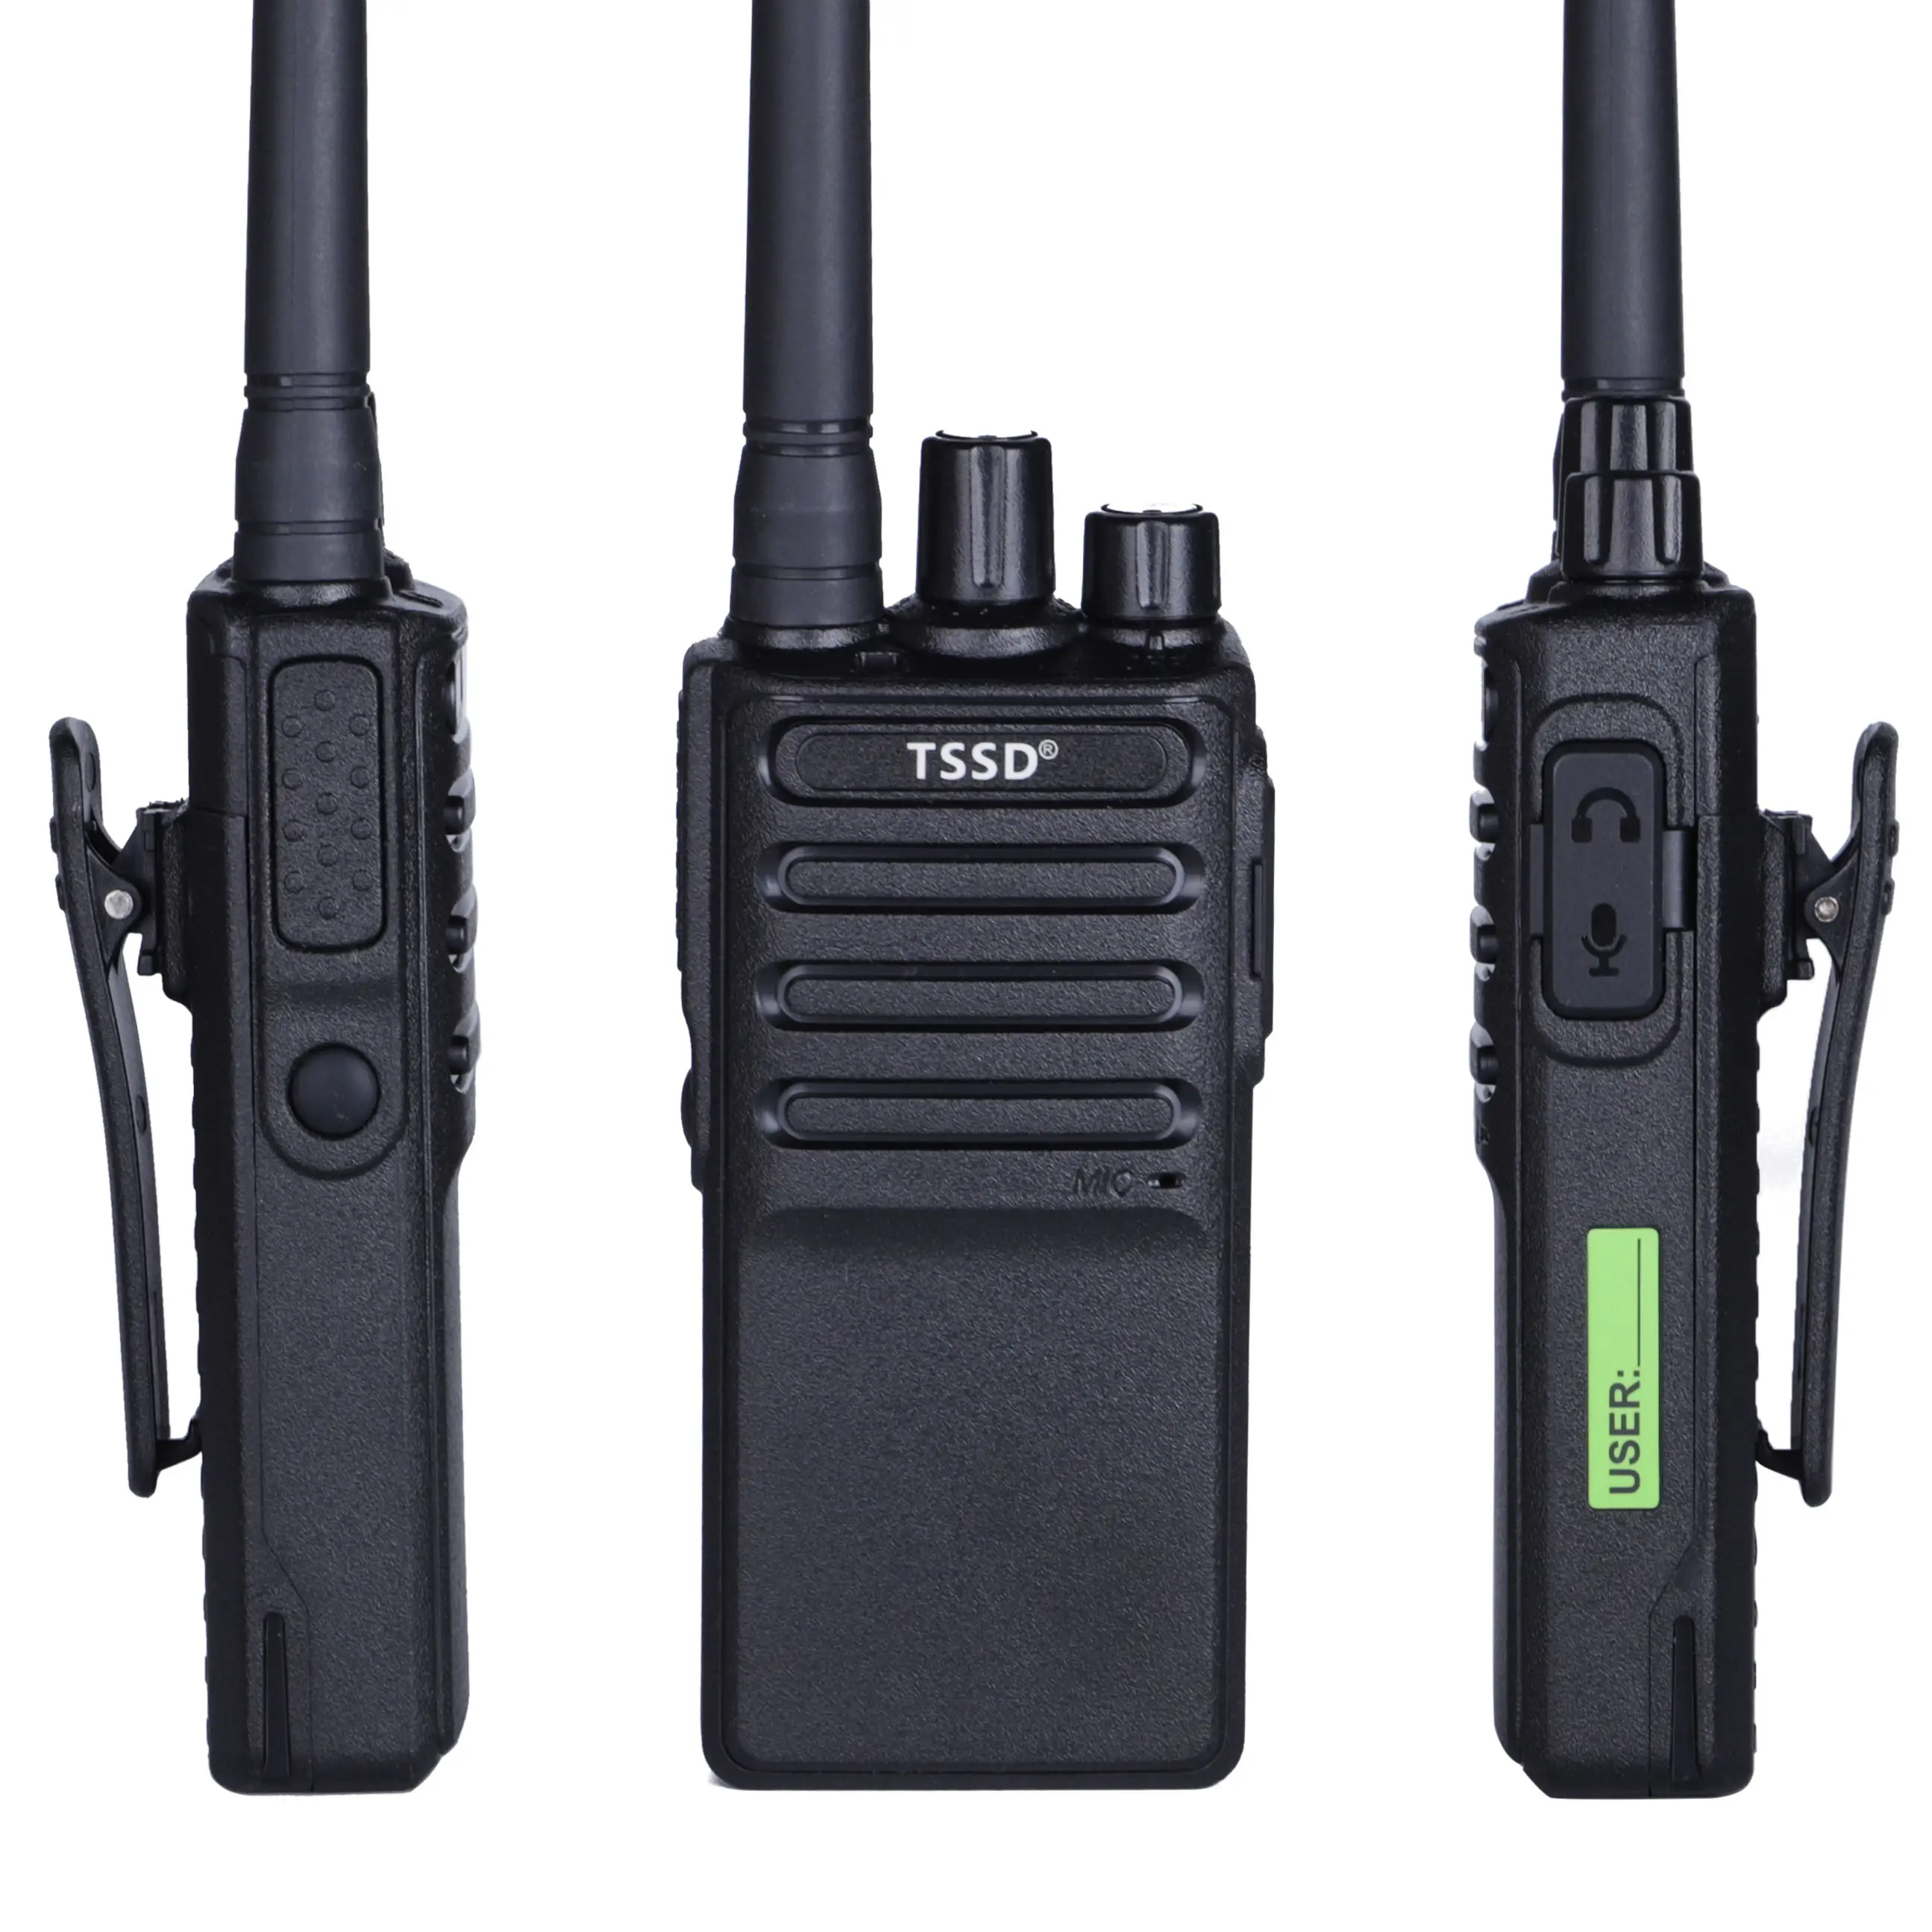 Tssd TS-K68 nouvelle arrivée UHF MINI interphone bidirectionnel Poc mini Radios pratiques rechargeables pour enfants téléphone portable pour l'extérieur radio portable